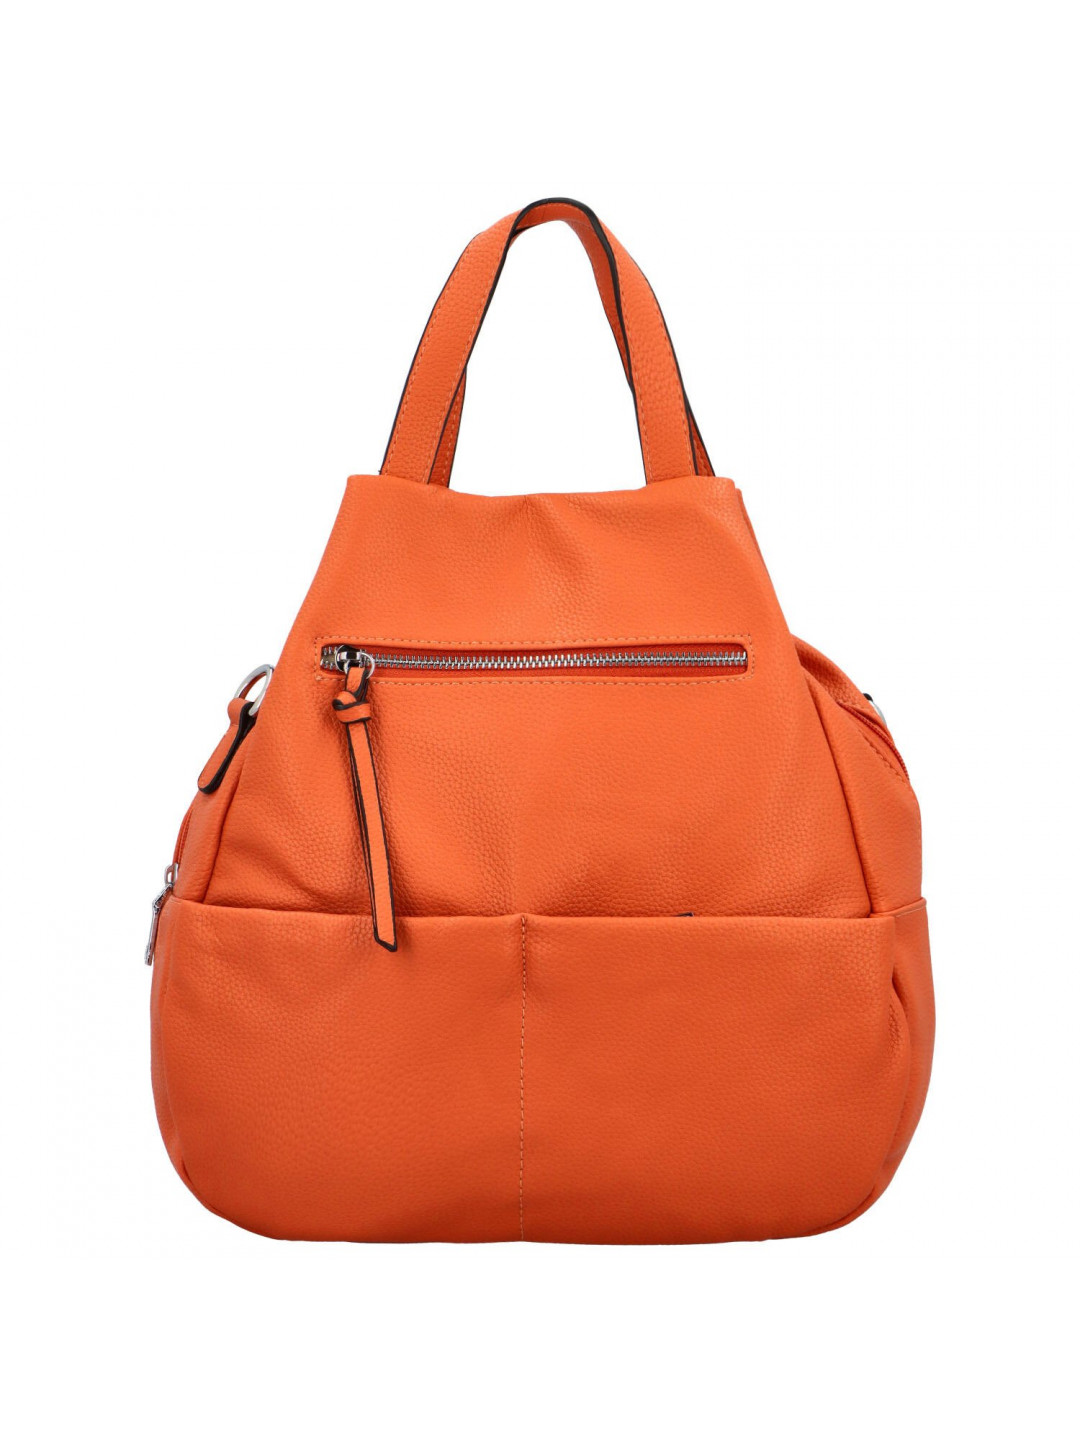 Trendy dámský kabelko-batůžek Tarotta oranžová